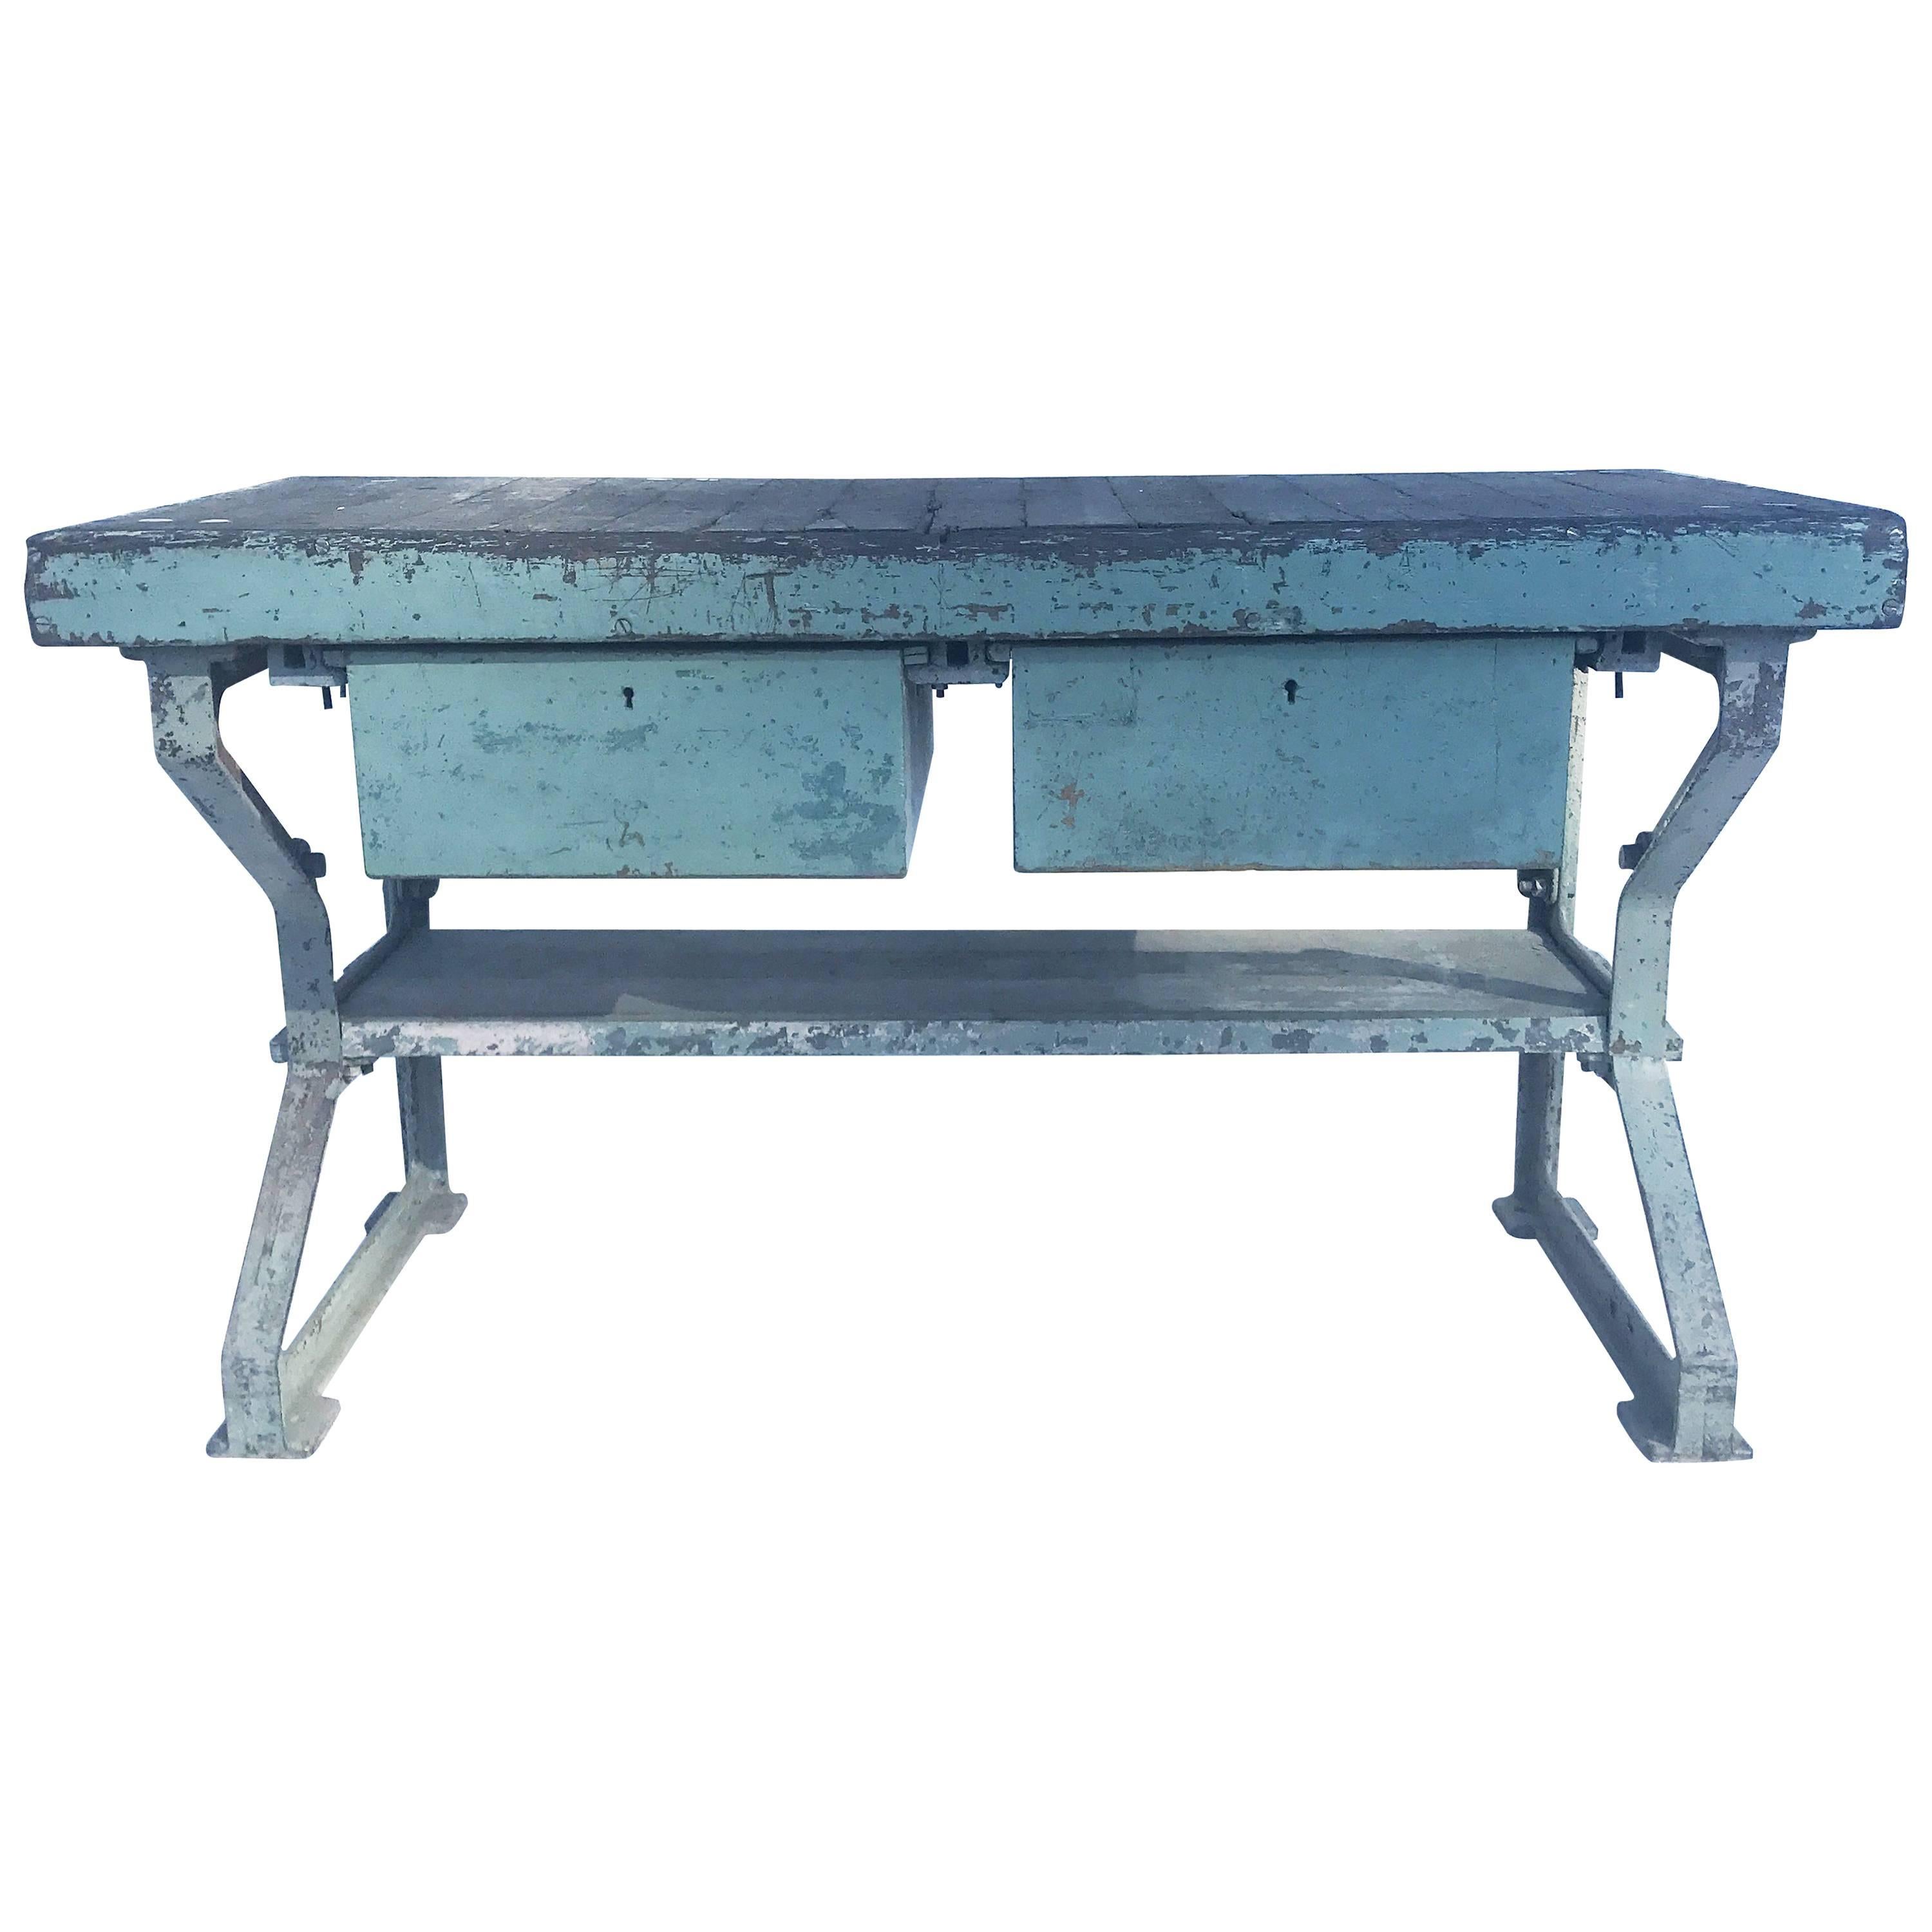 Vintage Blue Steel Industrial Table